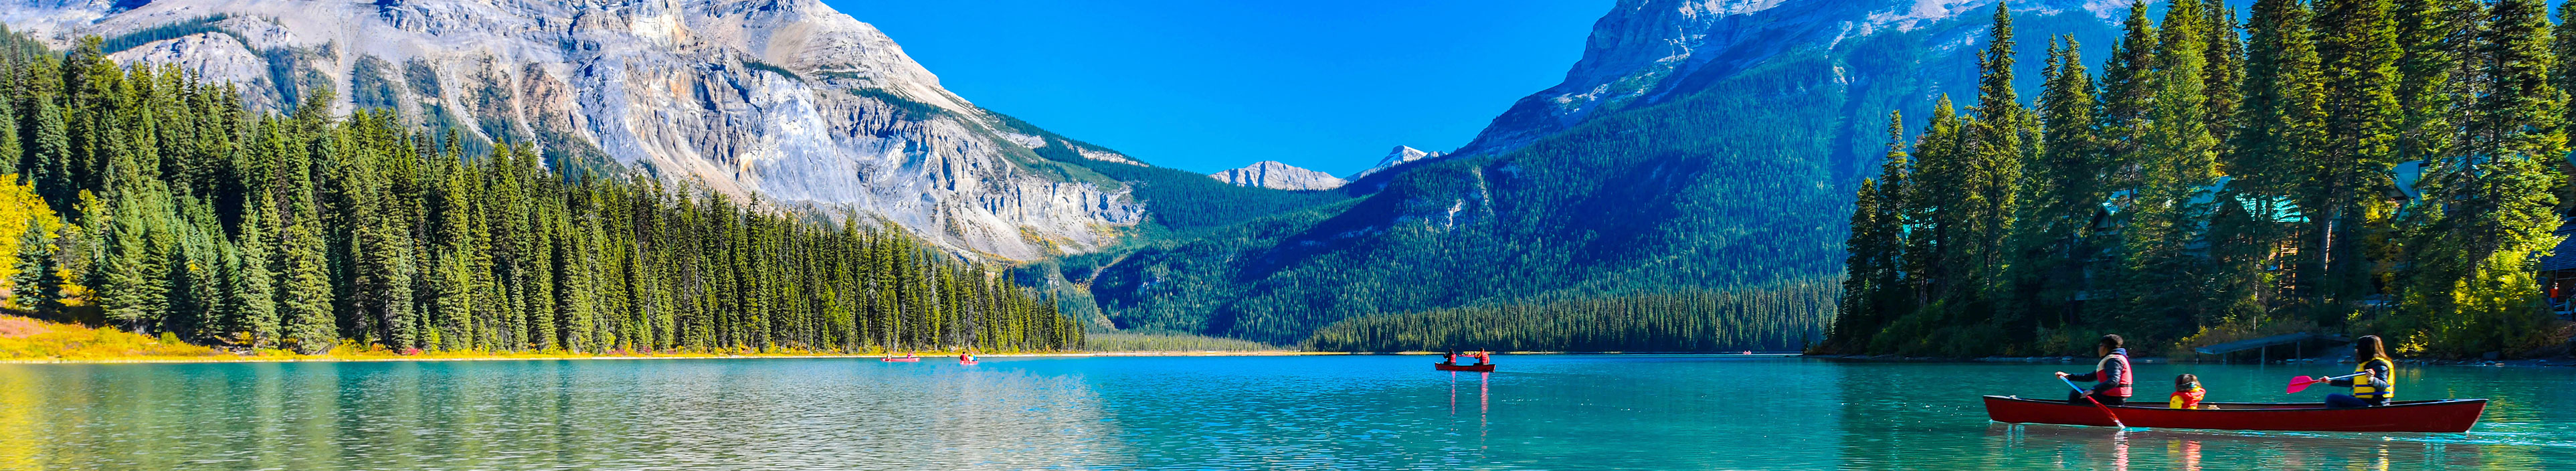 Blick auf den Emerald Lake in Kanada, im Hintergrund Berge.